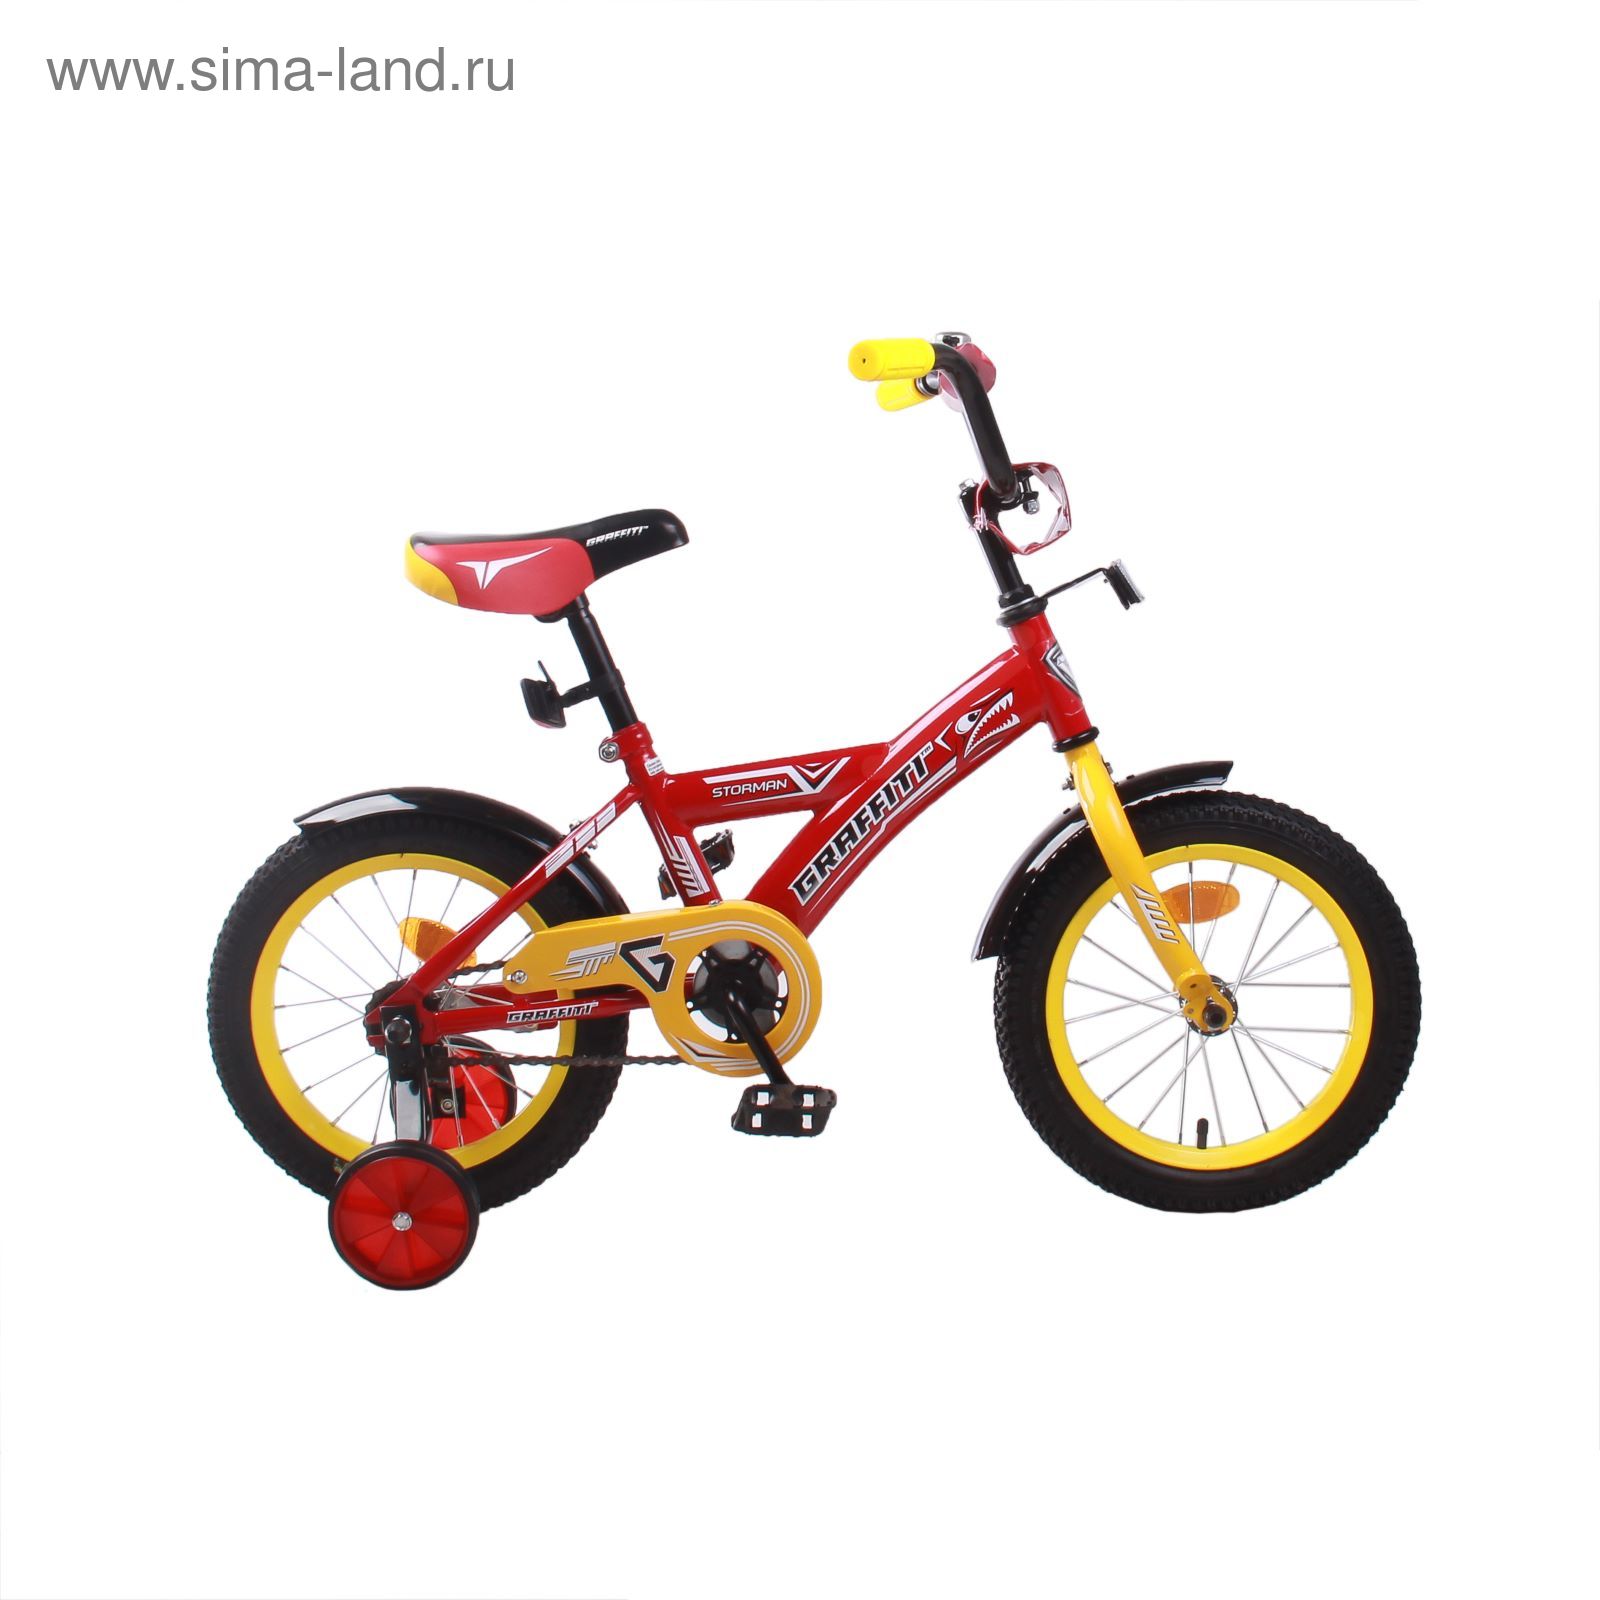 Велосипед 14" GRAFFITI Storman RUS, 2017, цвет красный